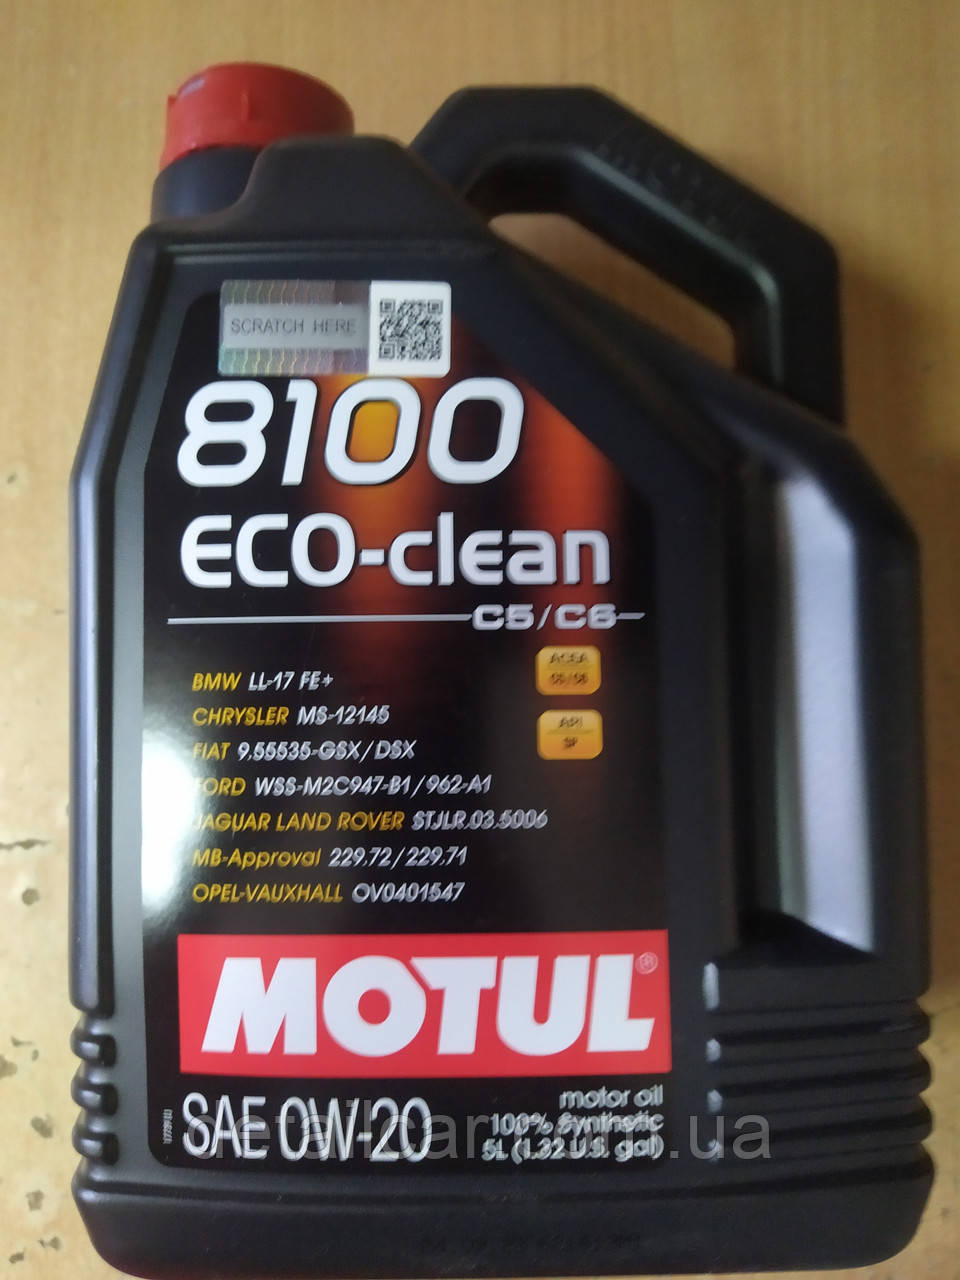 Синтетическое моторное масло MOTUL 8100 Eco-clean 0W20 5л.(BMW LL-17 FE+) 868151 - производства Франции